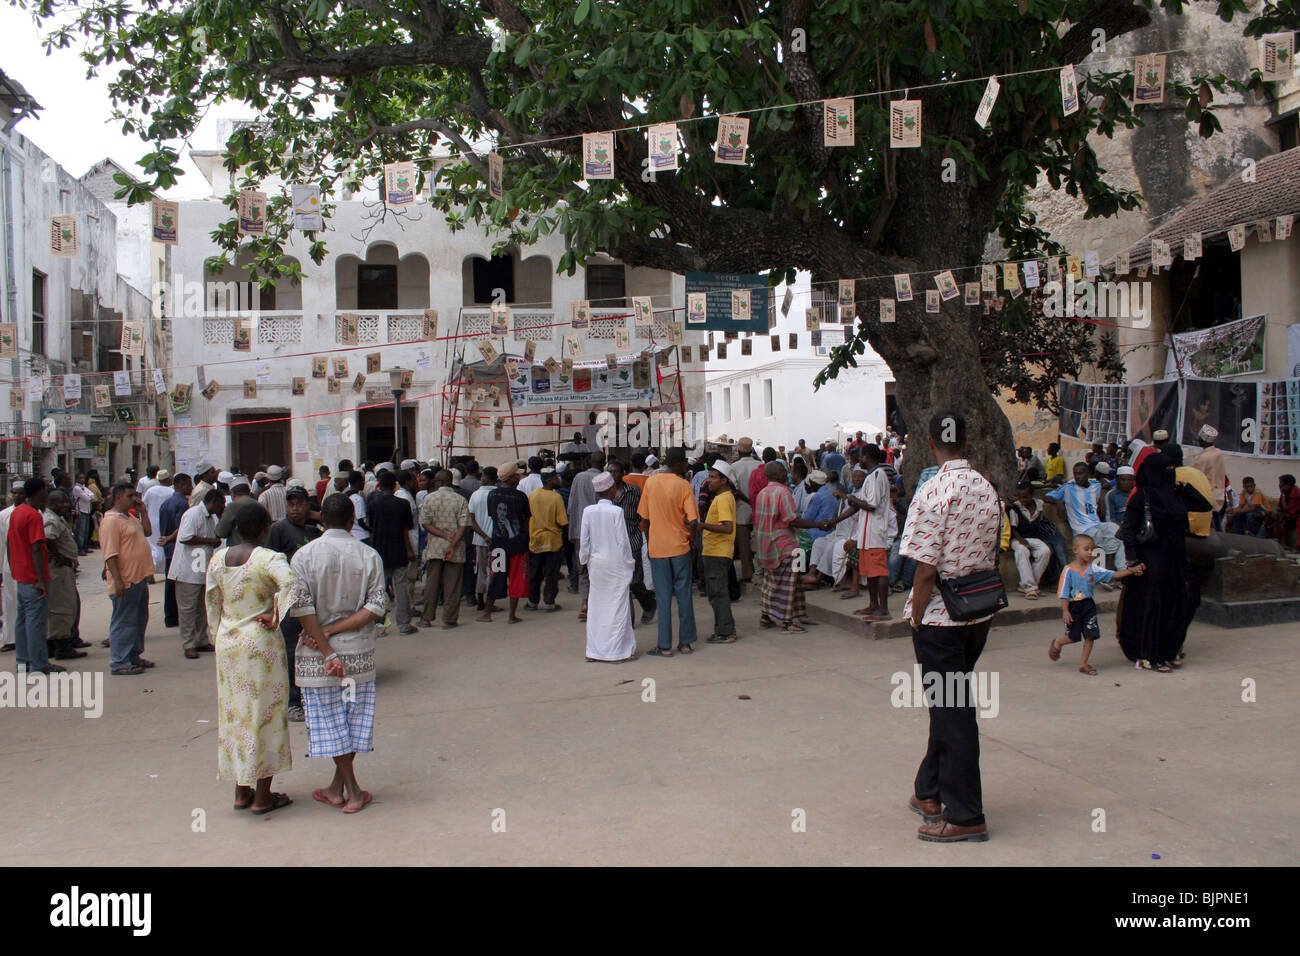 Crowds outside Lamu fort during Maulidi Stock Photo